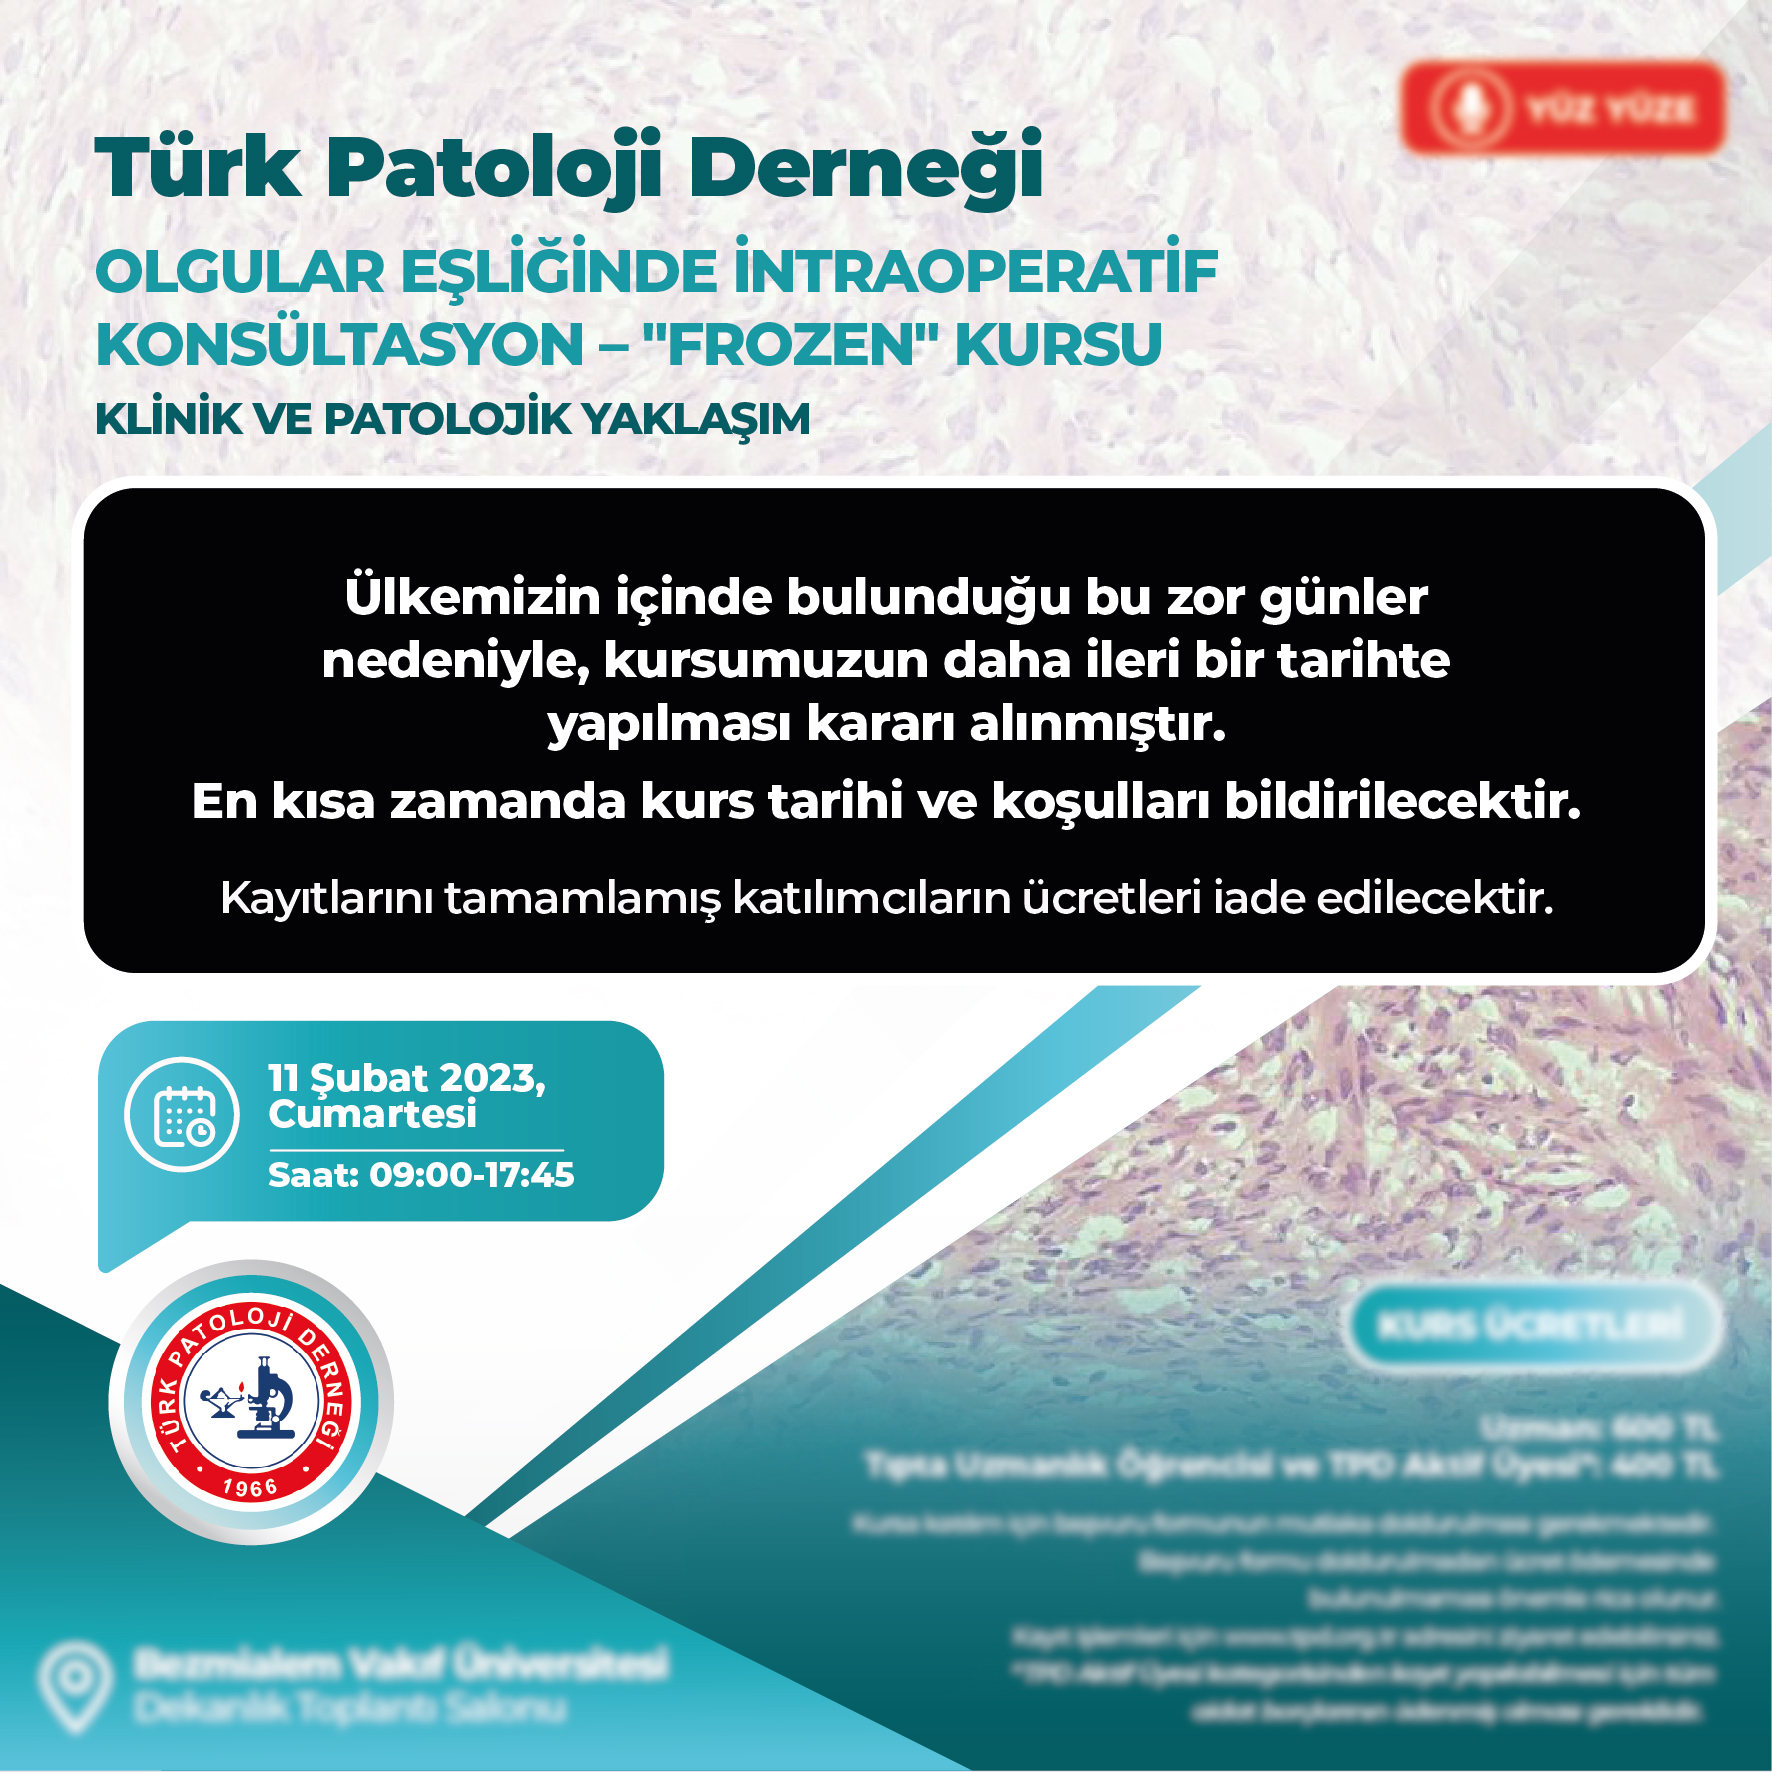 Türk Patoloji Derneği Olgular Eşliğinde İntraoperatif Konsültasyon - "Frozen" Kursu Ertelenmiştir.